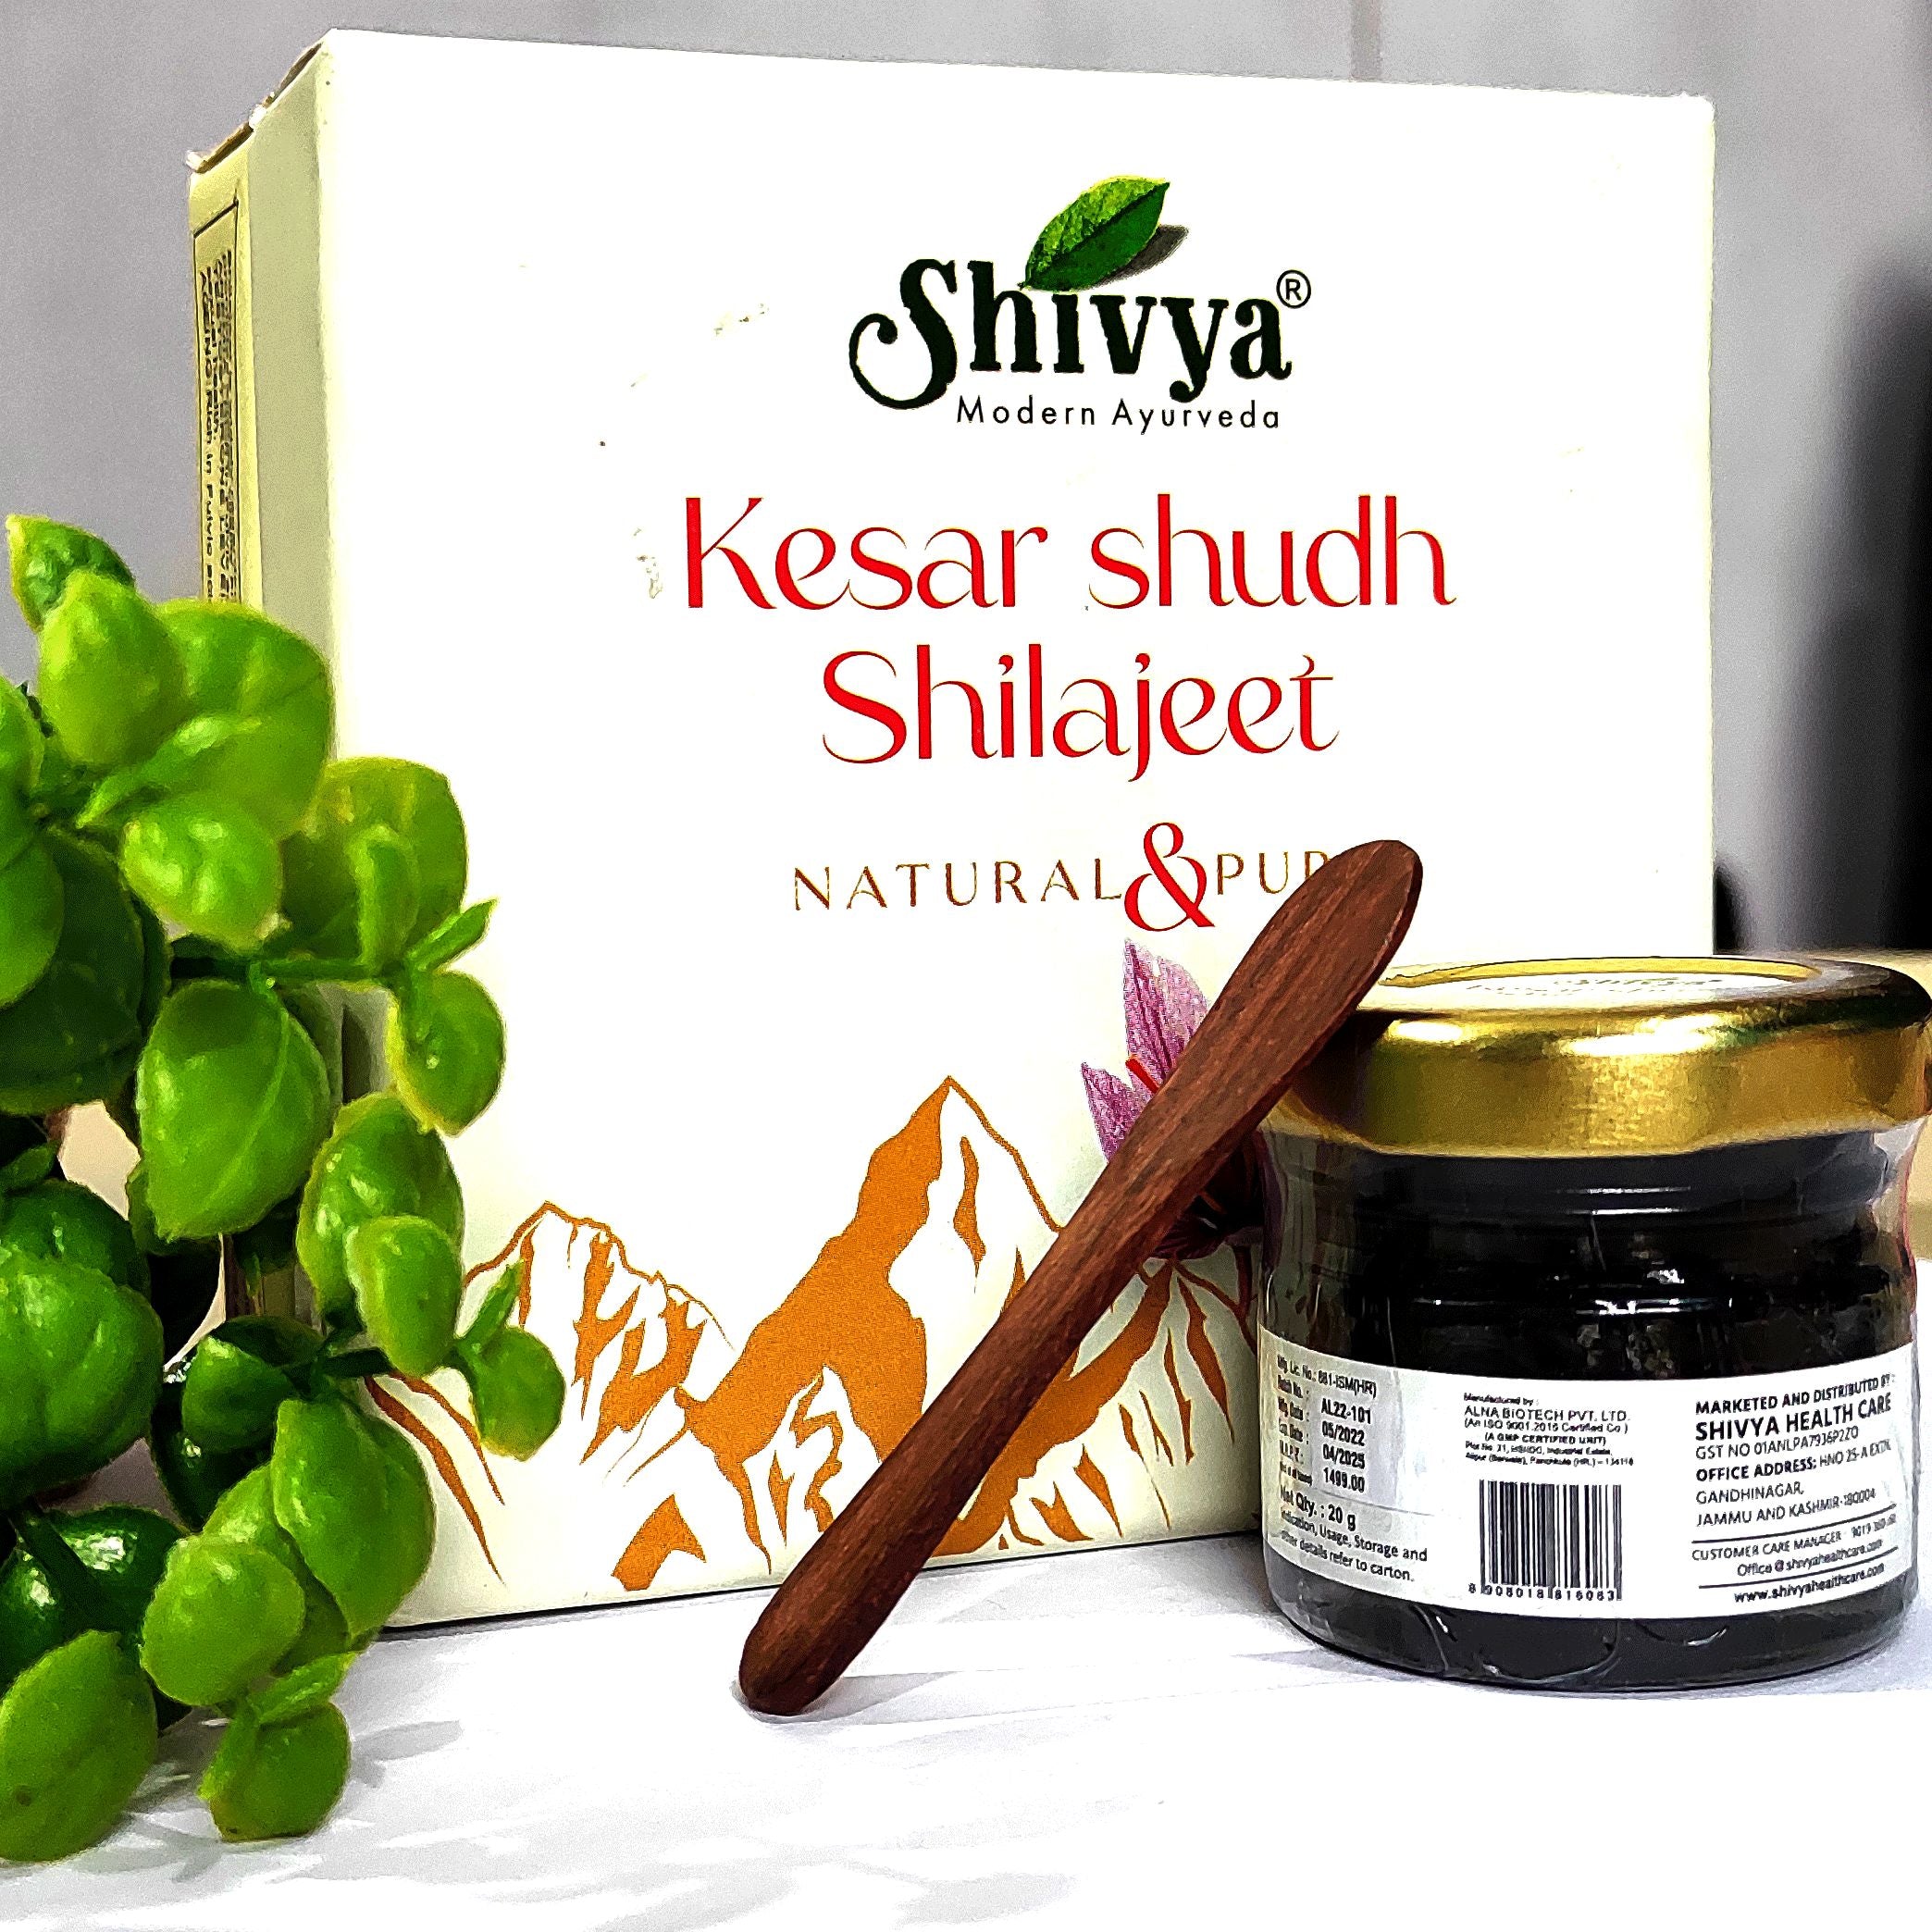 Shivya Kesar shudh Shilajeet - Natural & Pure, 20g – Shivyahealthcare